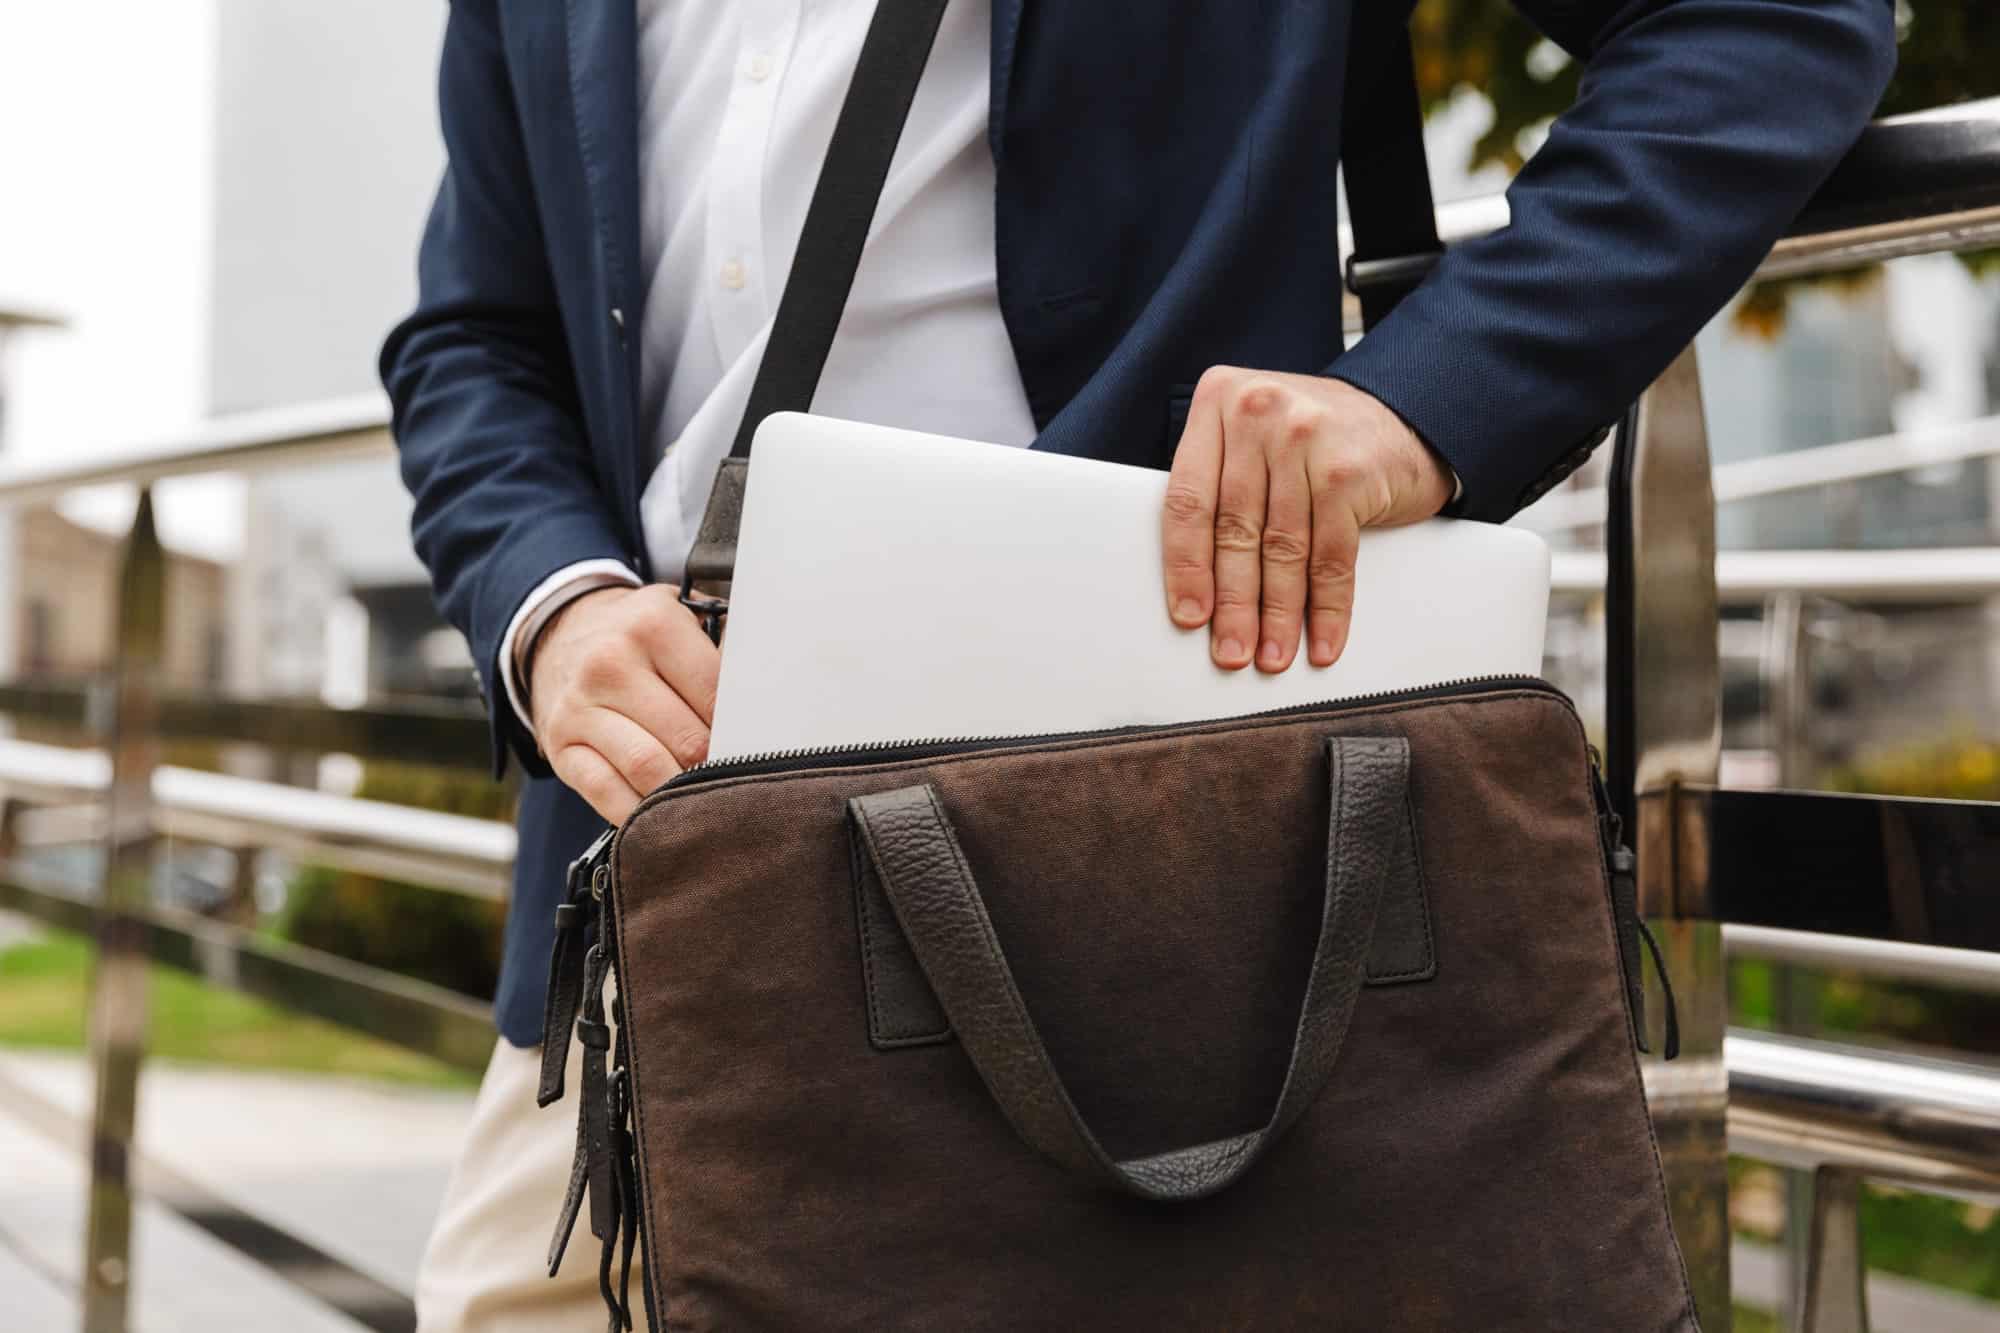 15.6 inch Laptop Bag,Waterproof Travel Briefcase Handbag Crossbody Case Shoulder Messenger Bag Business Office Bag with Wide Removable Straps Luggage Strap Handle for Men Women Work 